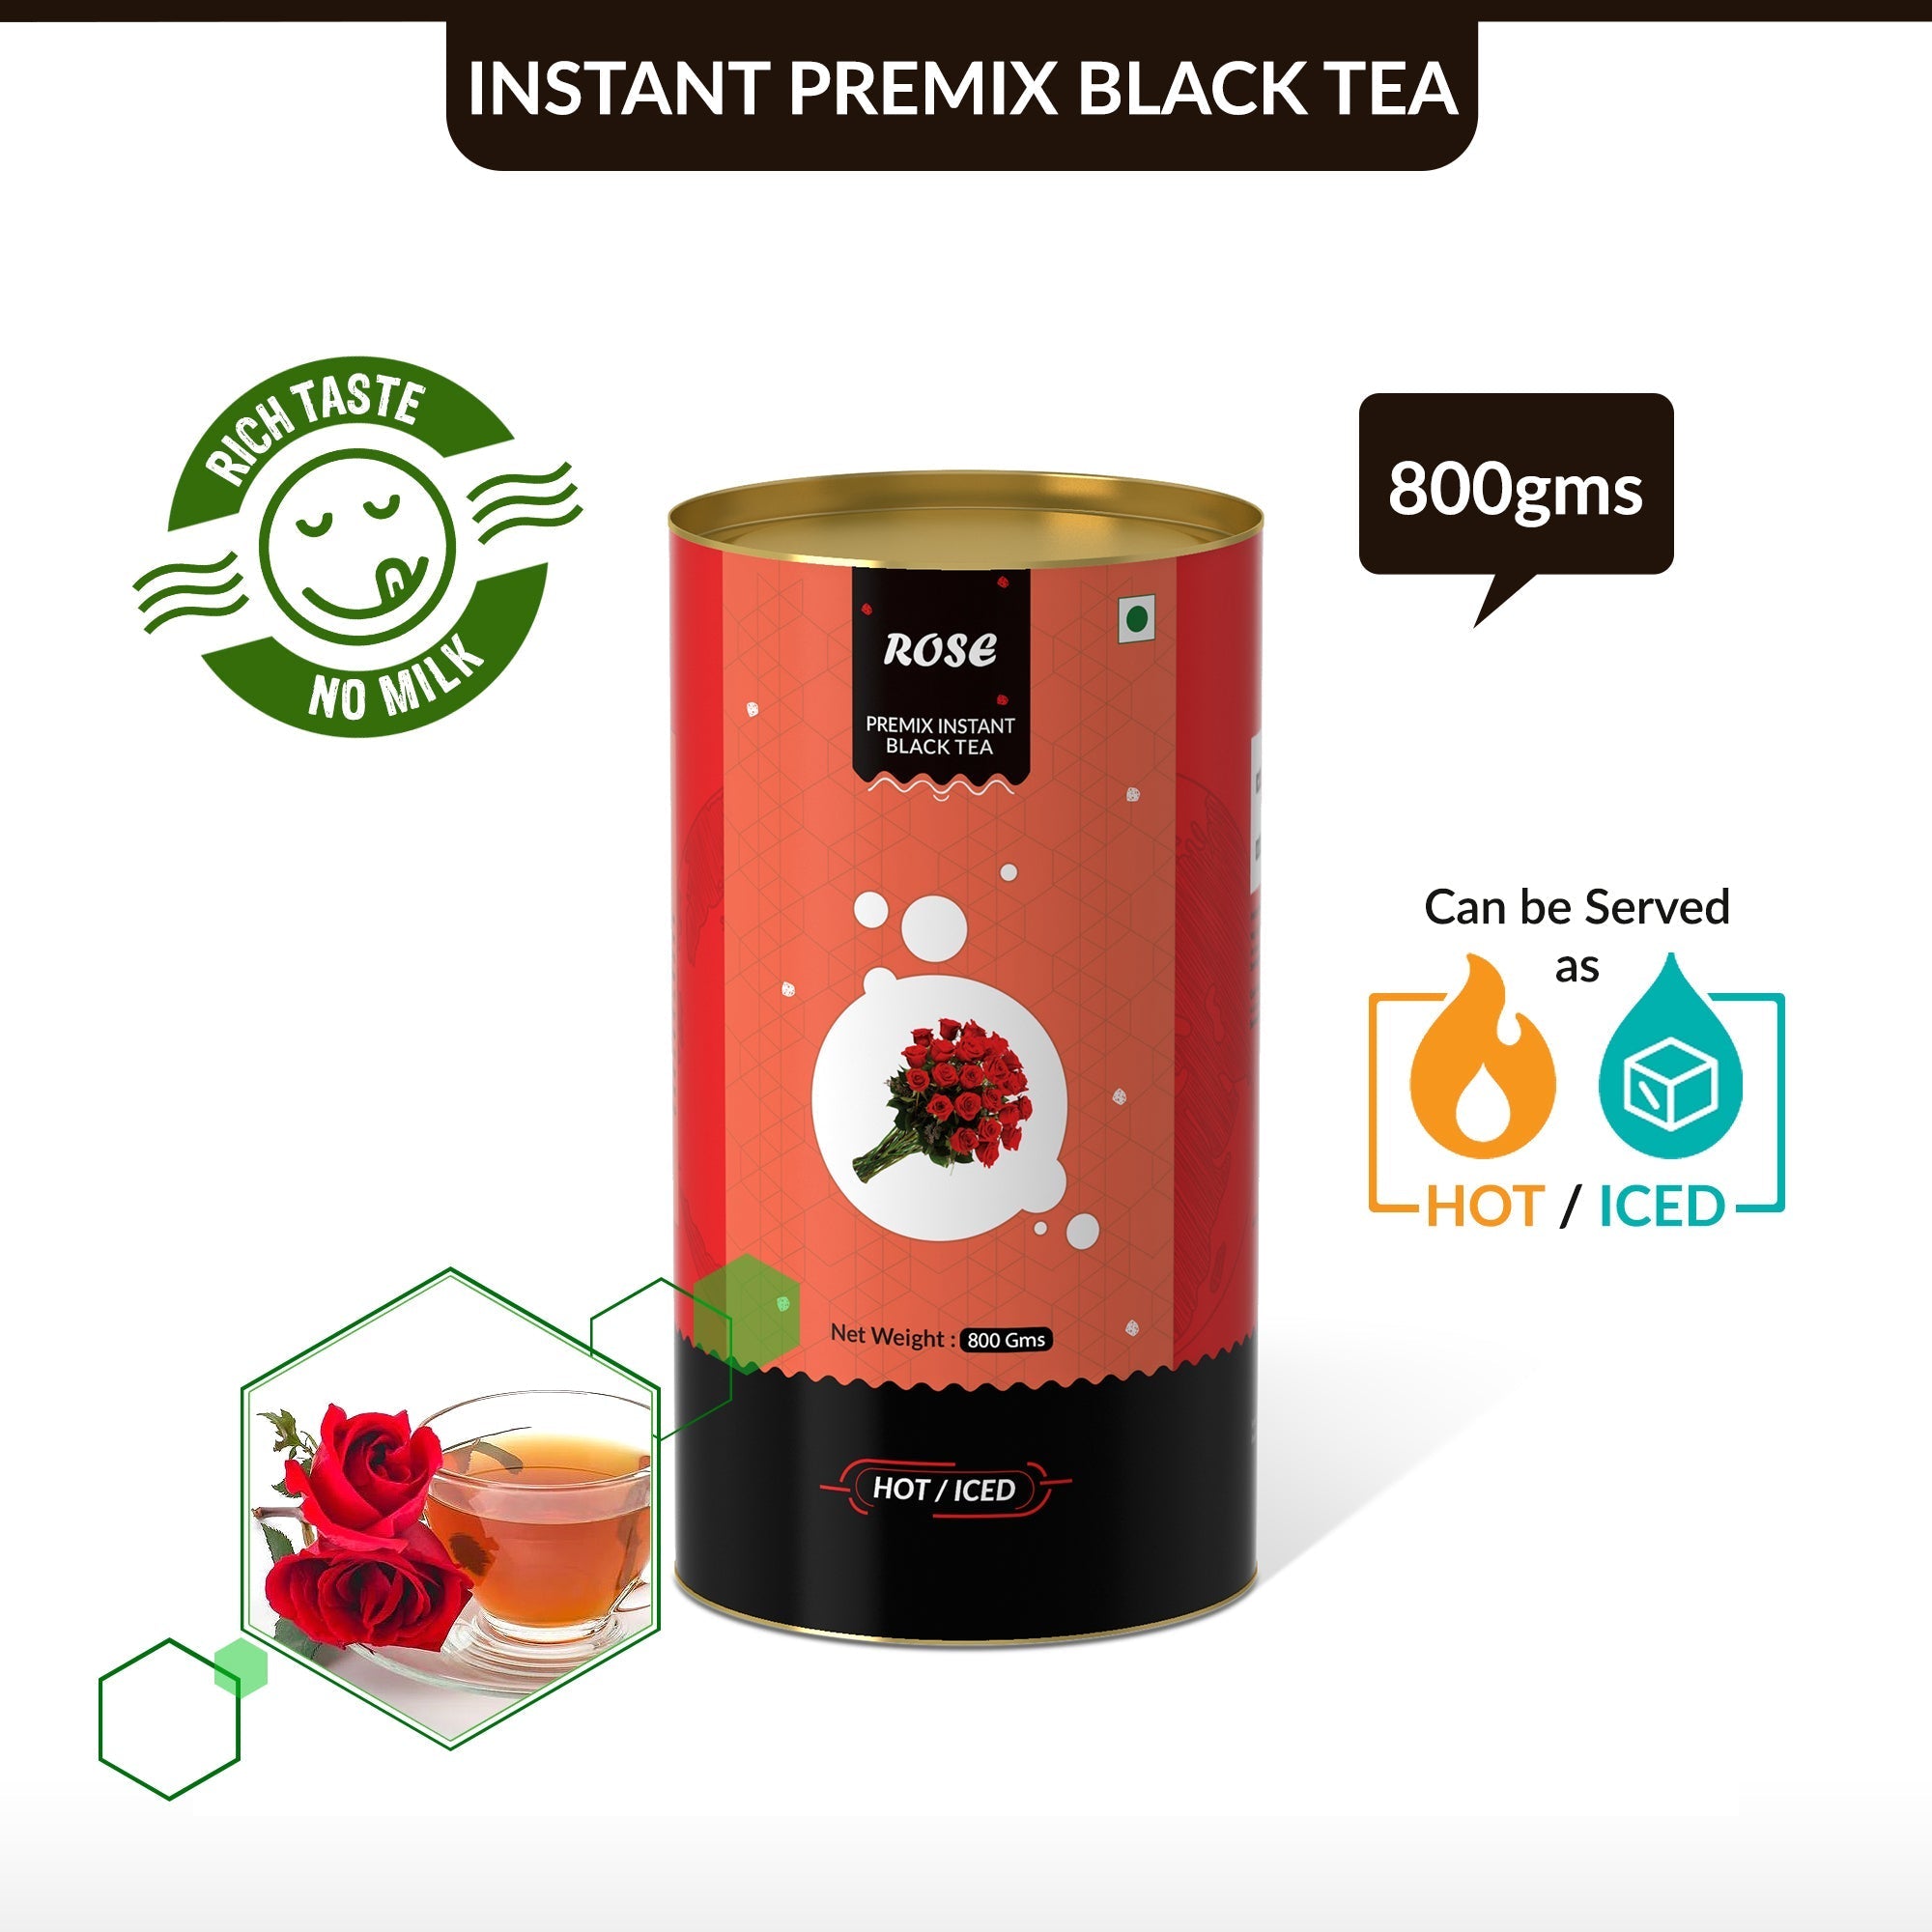 Rose Flavored Instant Black Tea - 400 gms